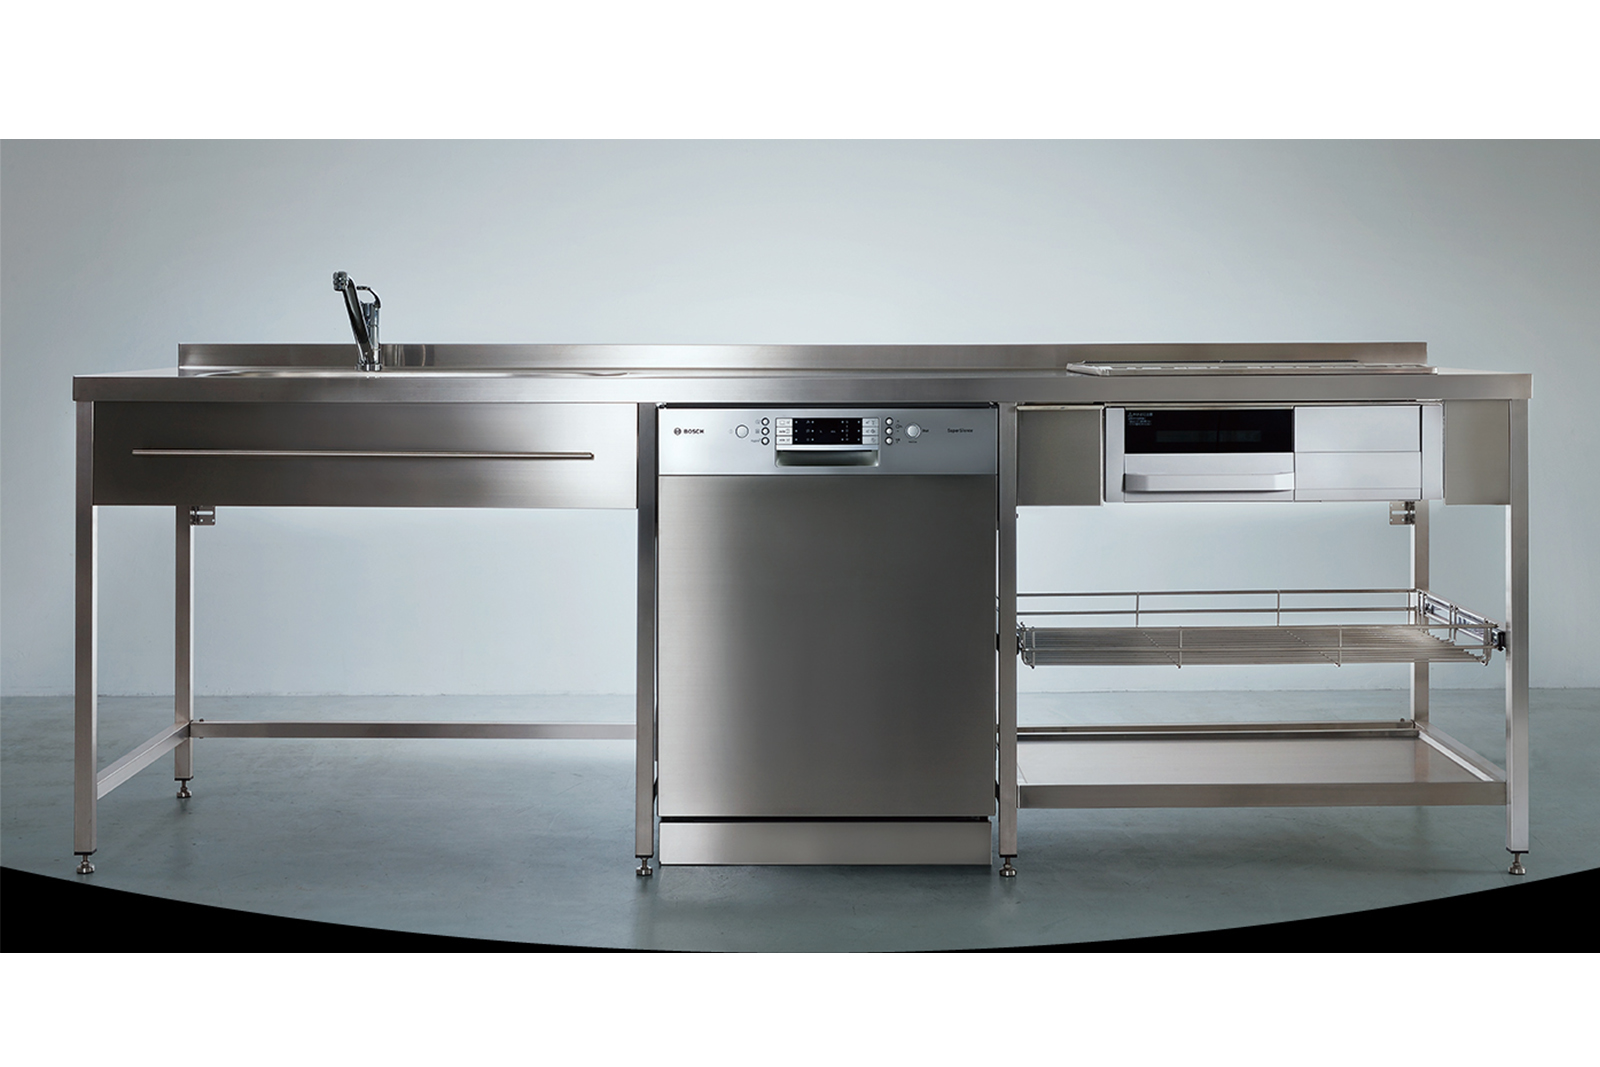 ステンレスフレームキッチン W2250×D650 KB-KC005-02-G078 中央はオプションのフロントオープン食洗機 W600（W2100・W2250・W2400はW450の食洗機のみ設置可能）※タオルバーは旧仕様のW800、現行はW490